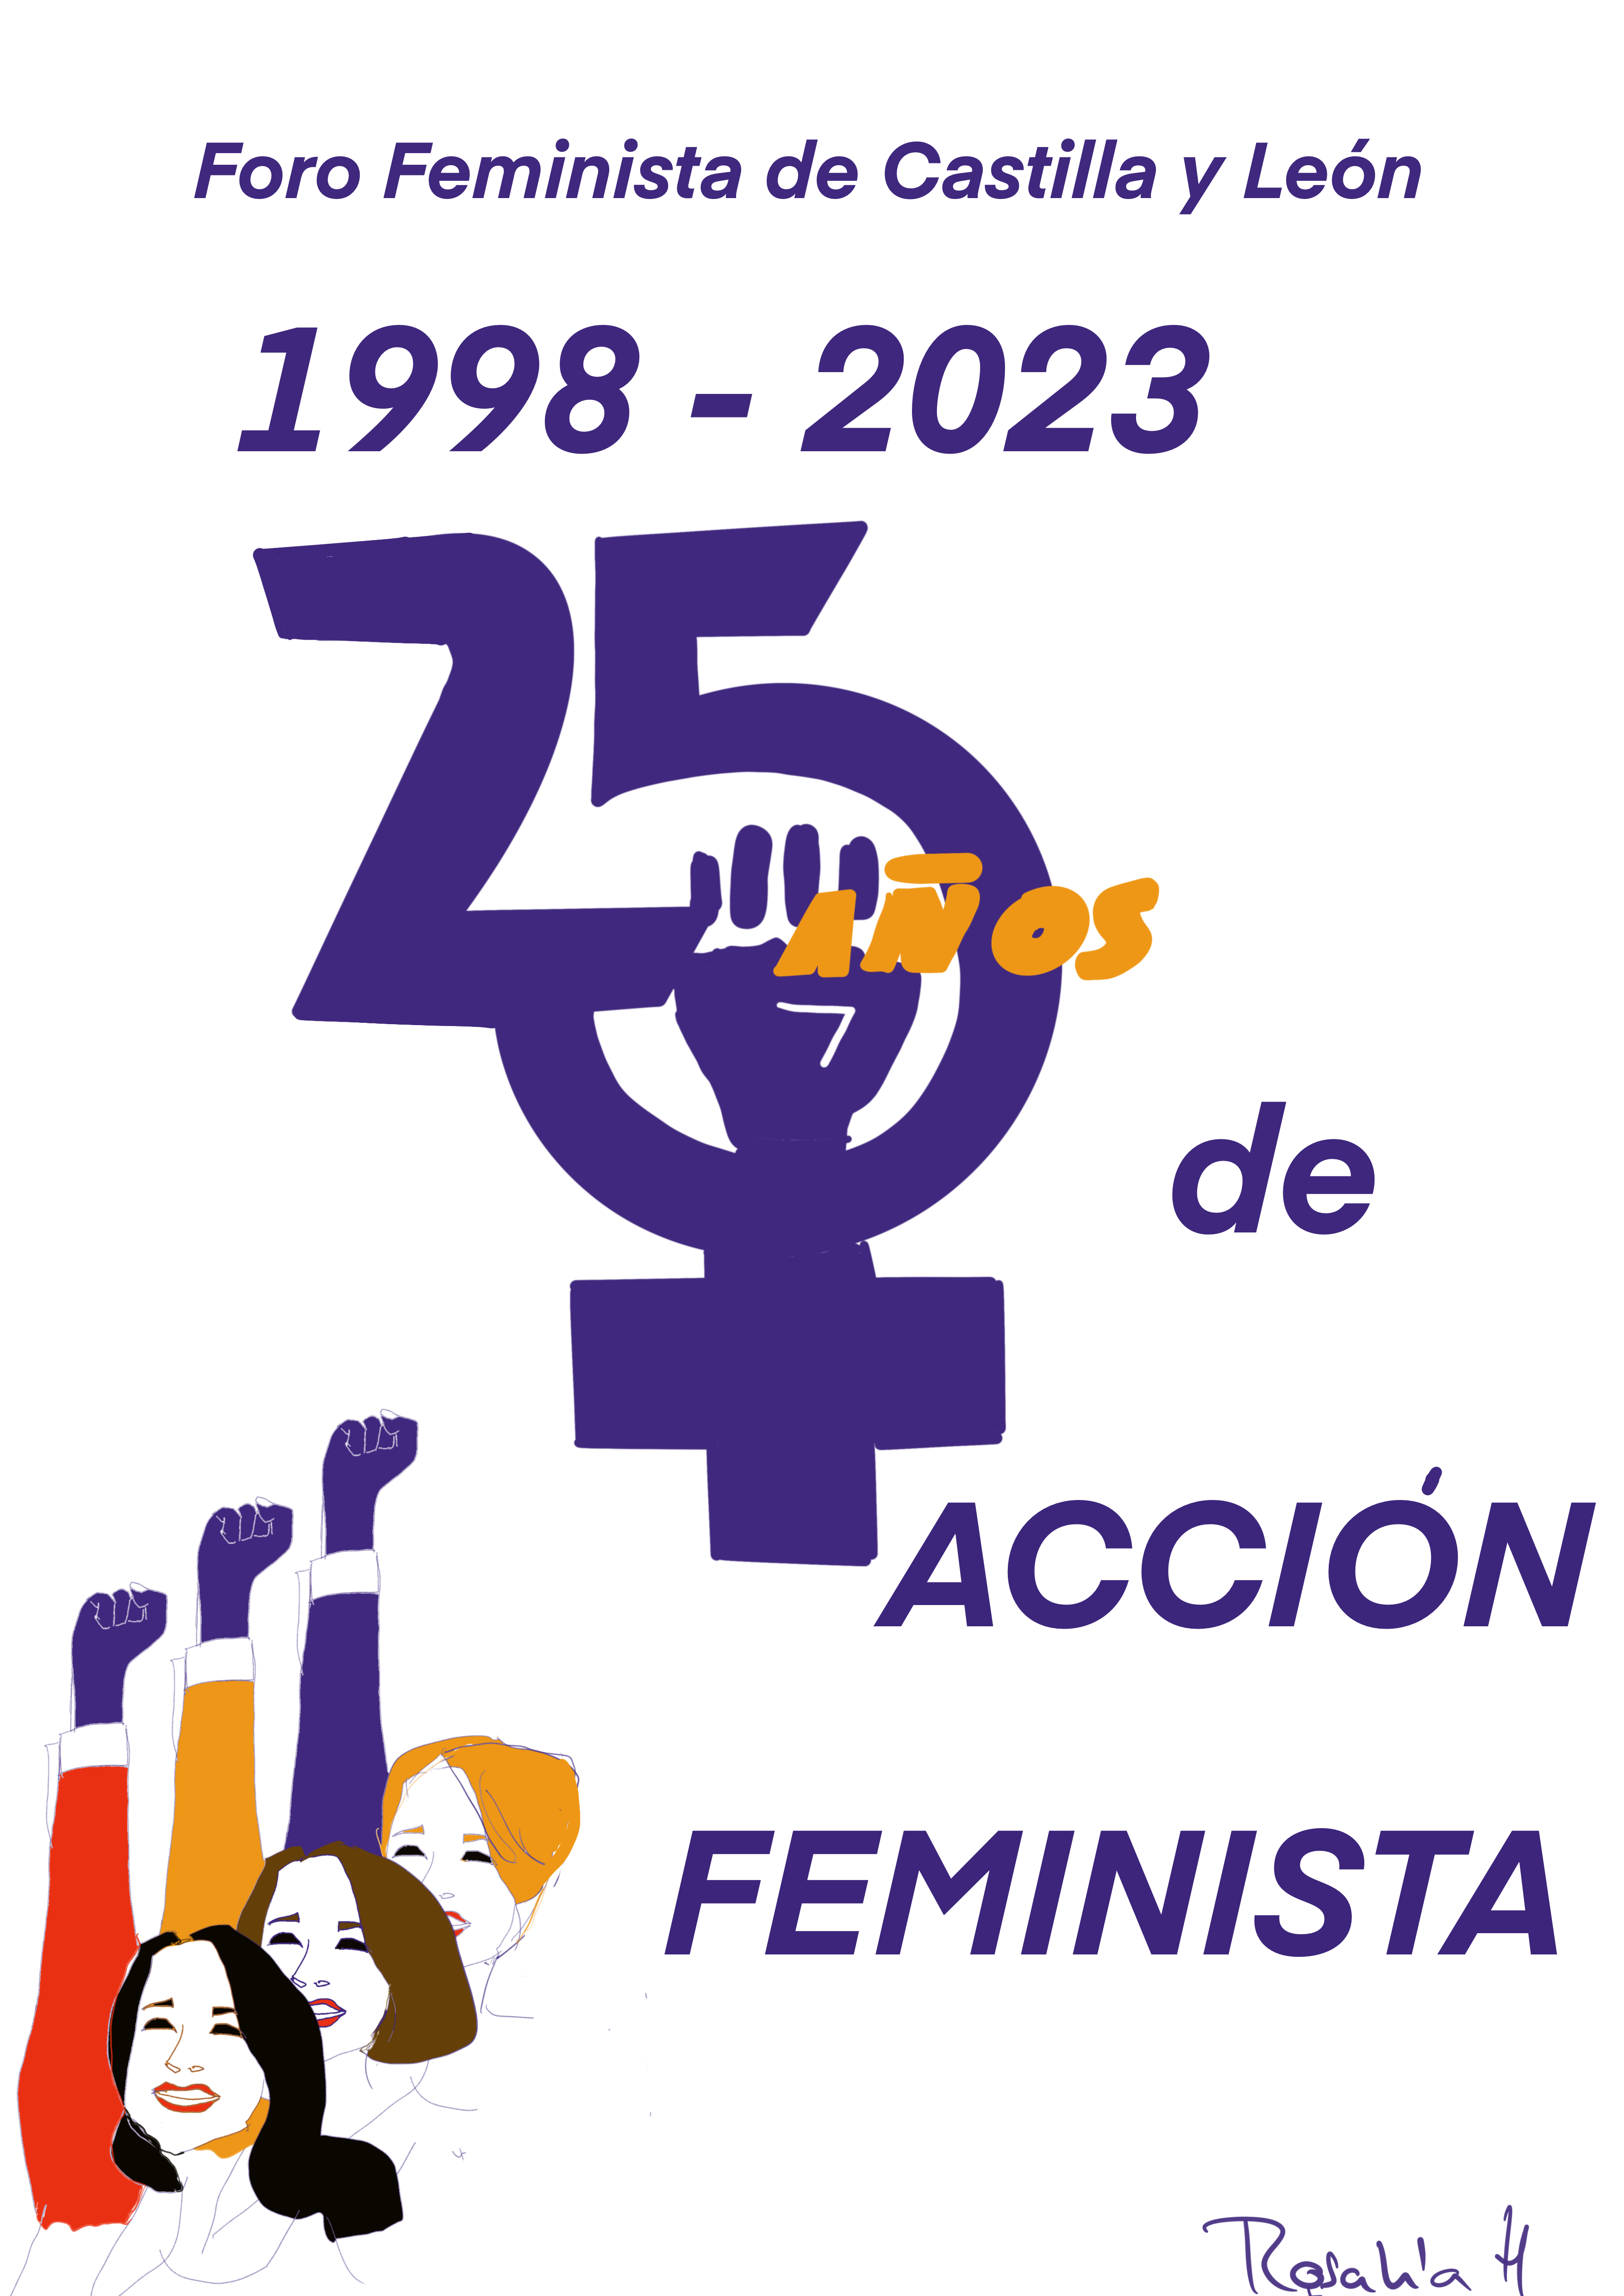 ASAMBLEA GENERAL FORO FEMINISTA CYL. 18 DE FEBRERO DE 2023